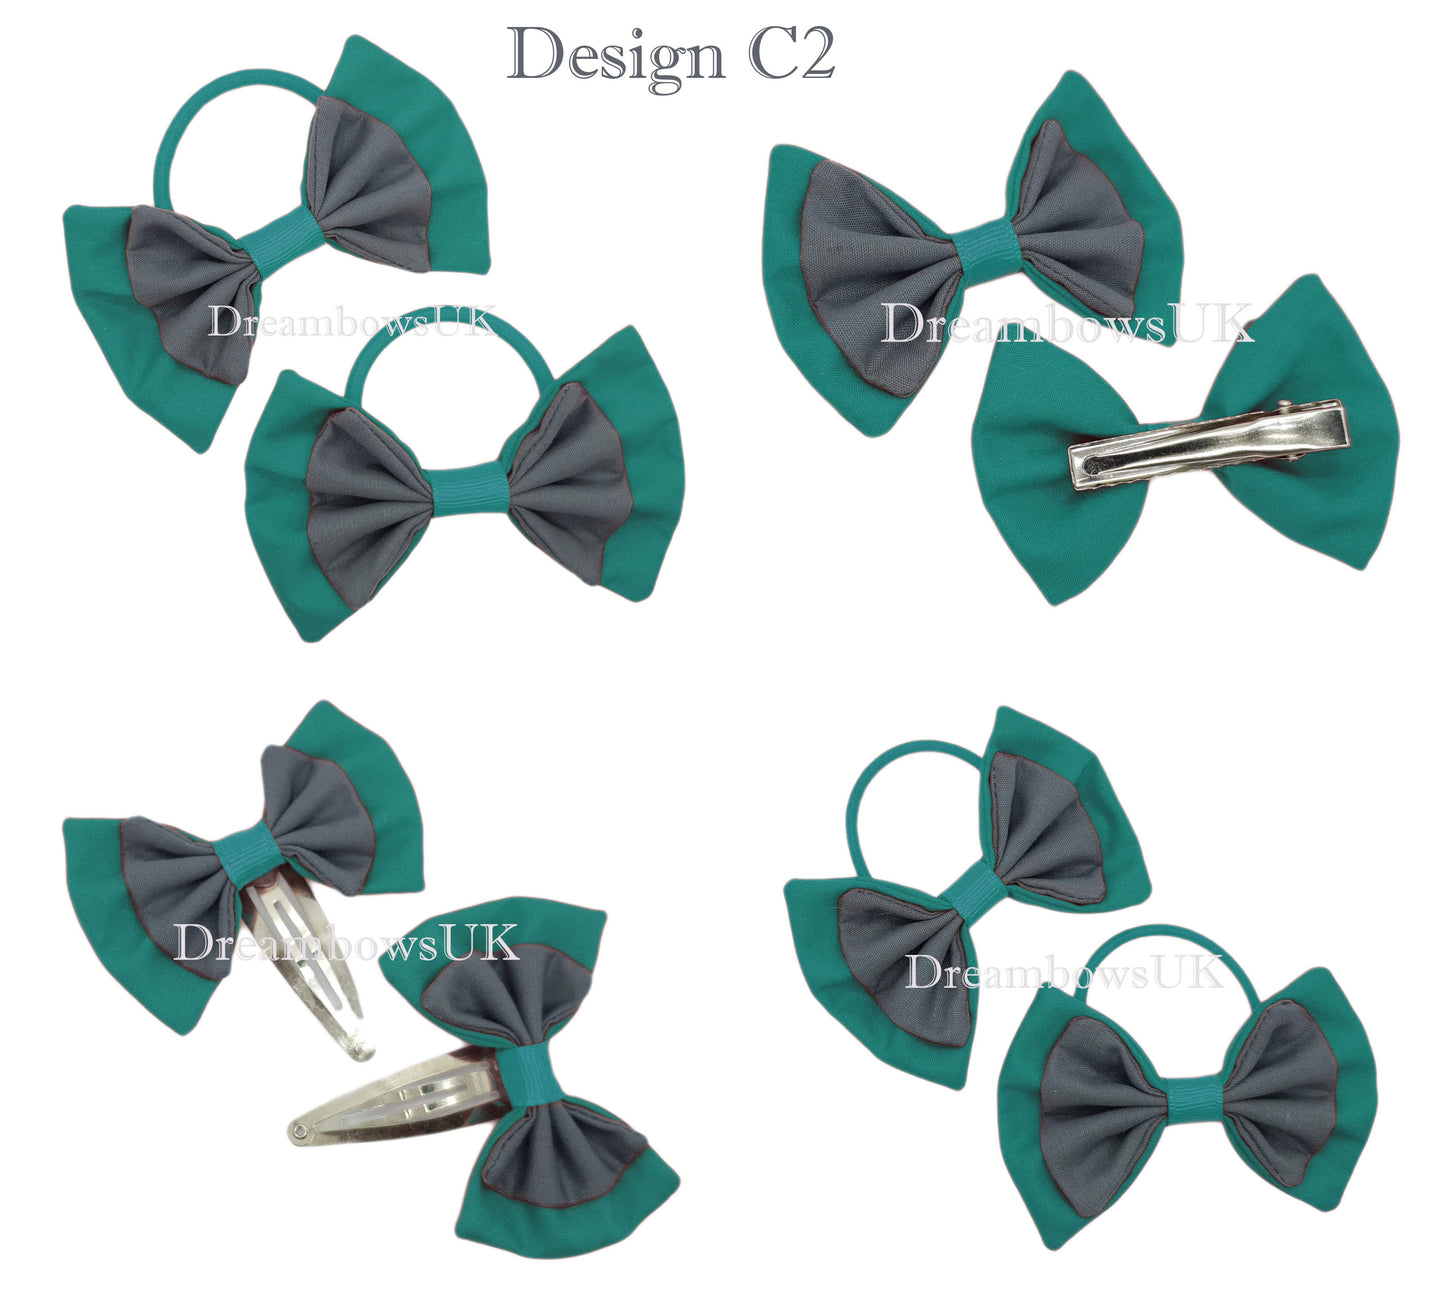 2x Grey and jade green fabric hair bows